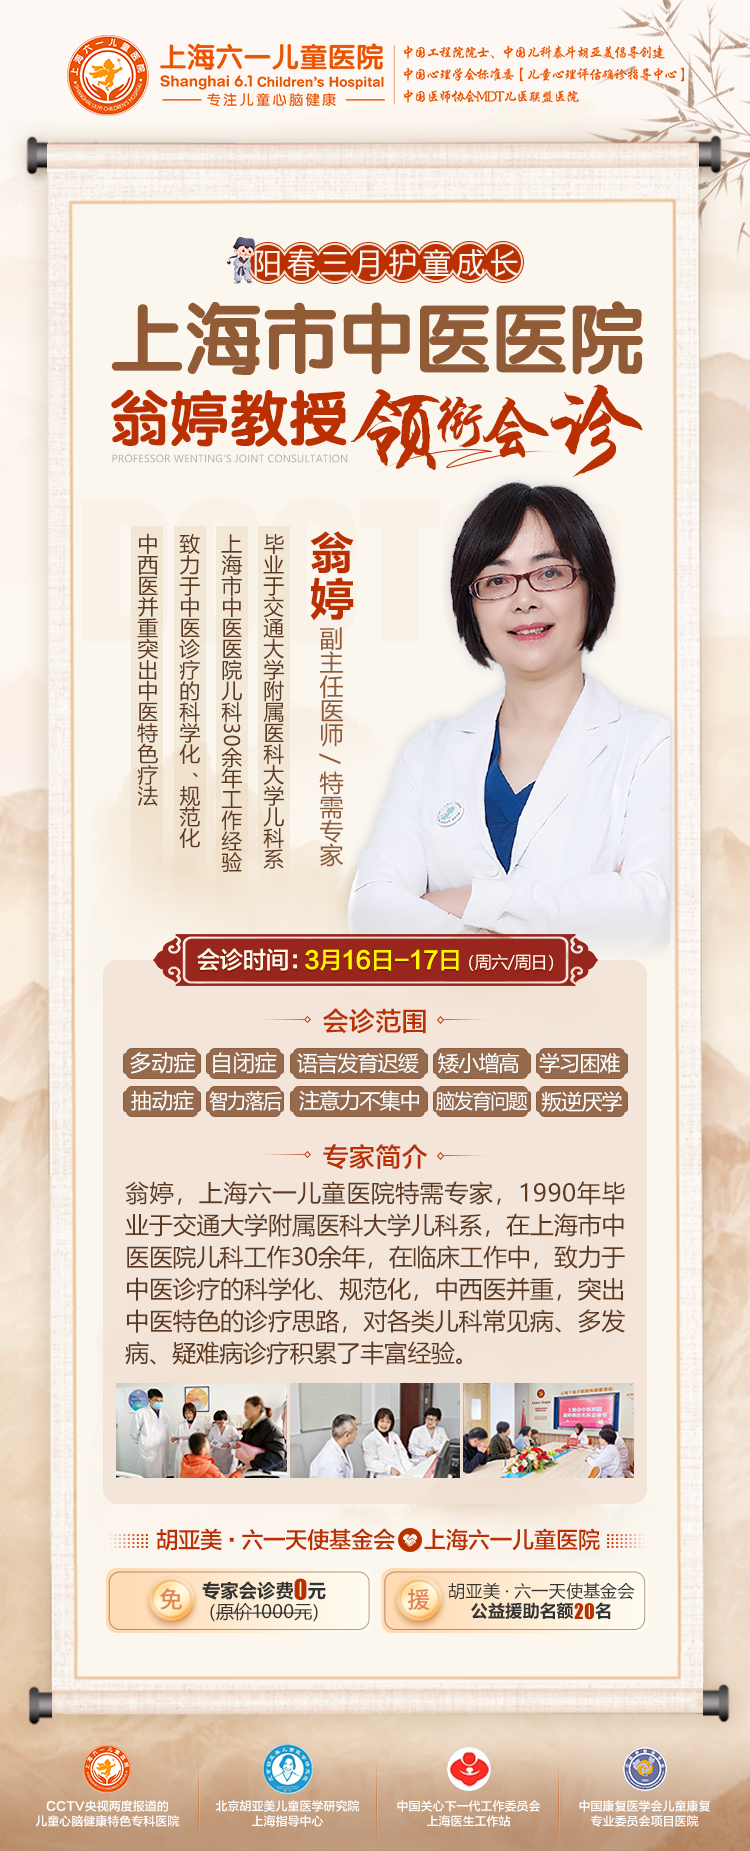 上海市中医医院翁婷教授3月16-17日在上海六一儿童医院开展专家联合会诊